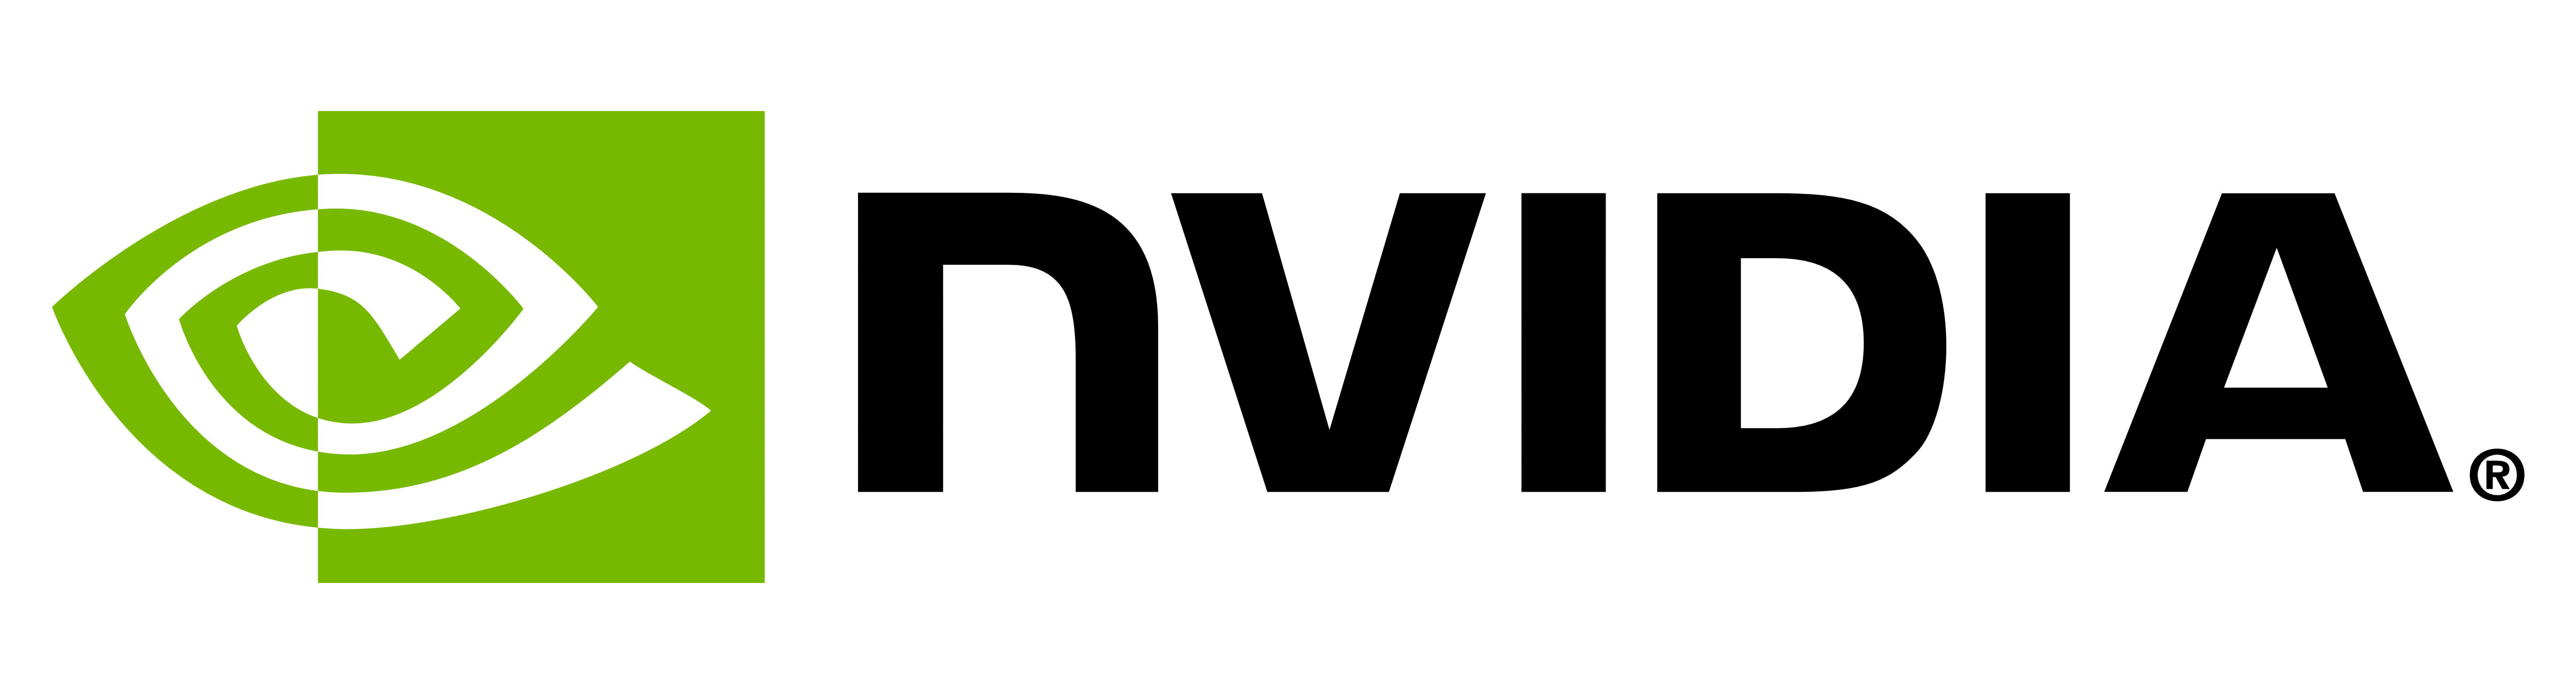 Înțeles sigla și simbolul NVIDIA | istorie și evoluție